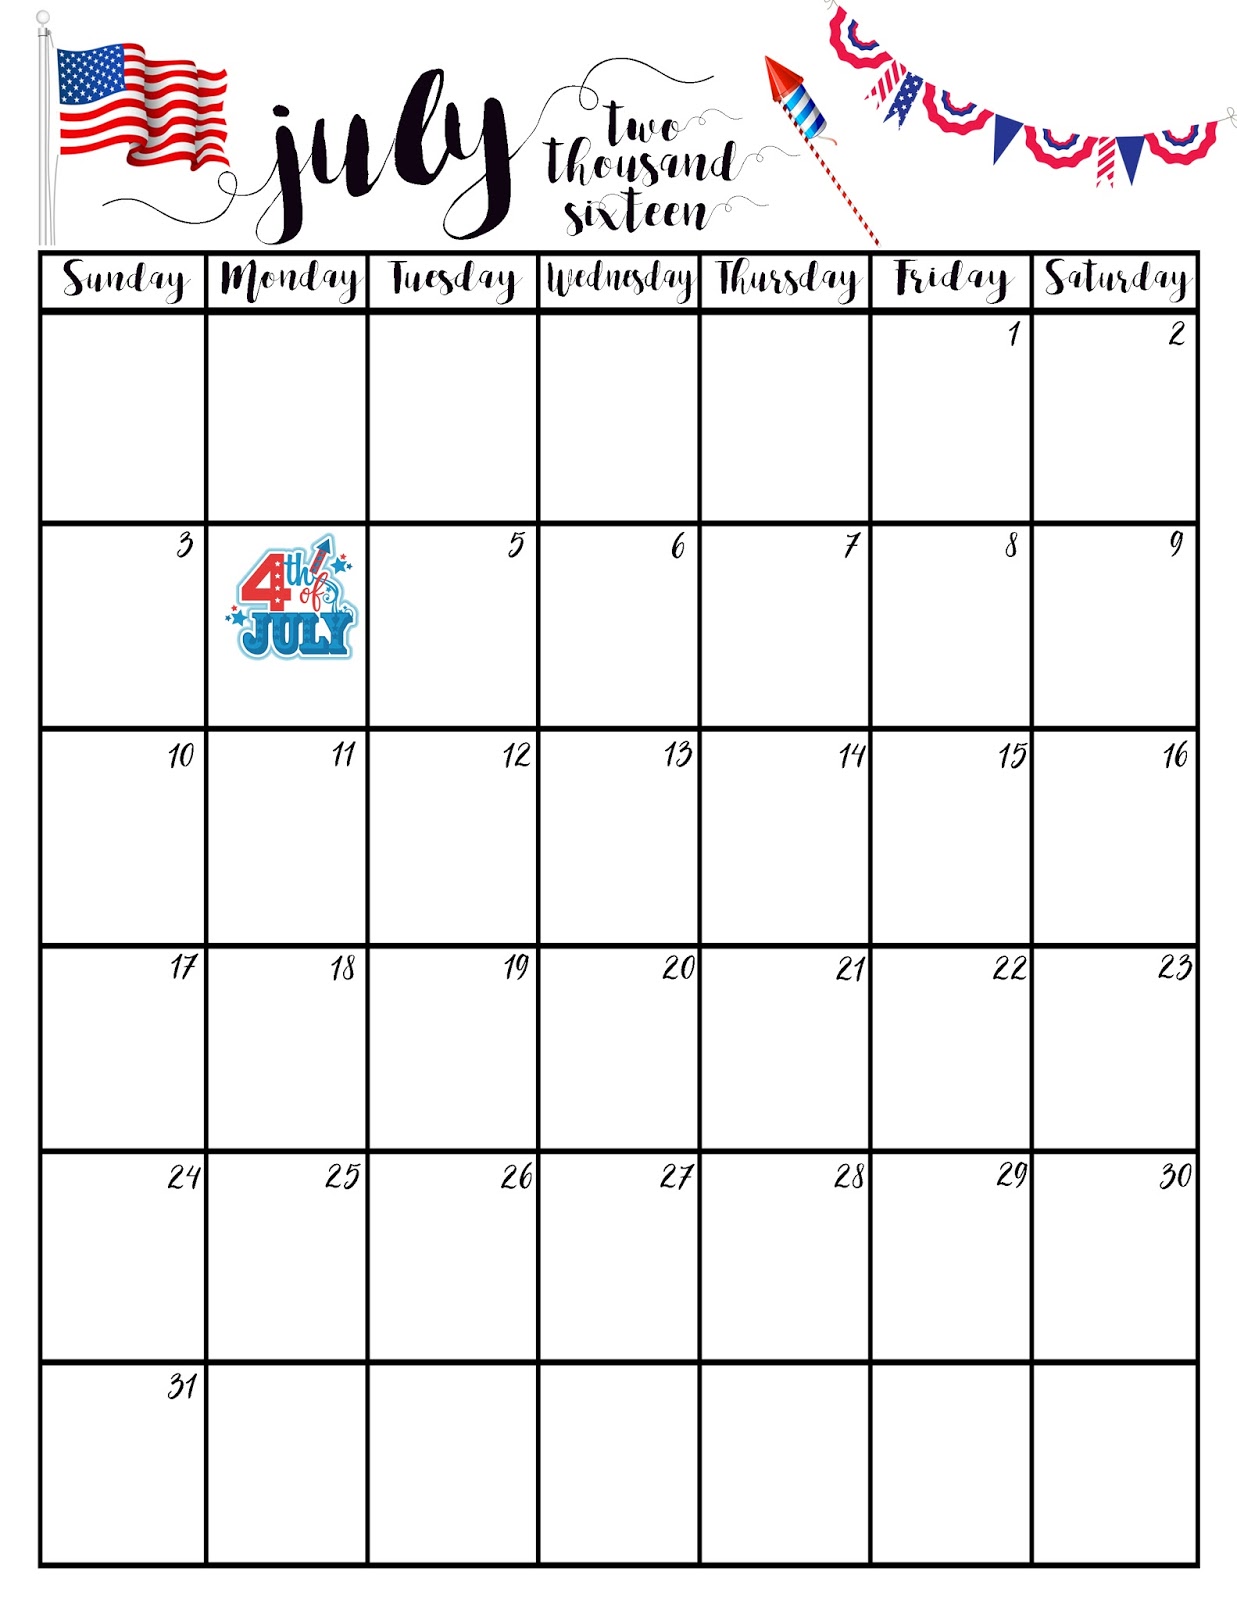 FREE JULY 2016 Printable Calendar Love Always Leslie